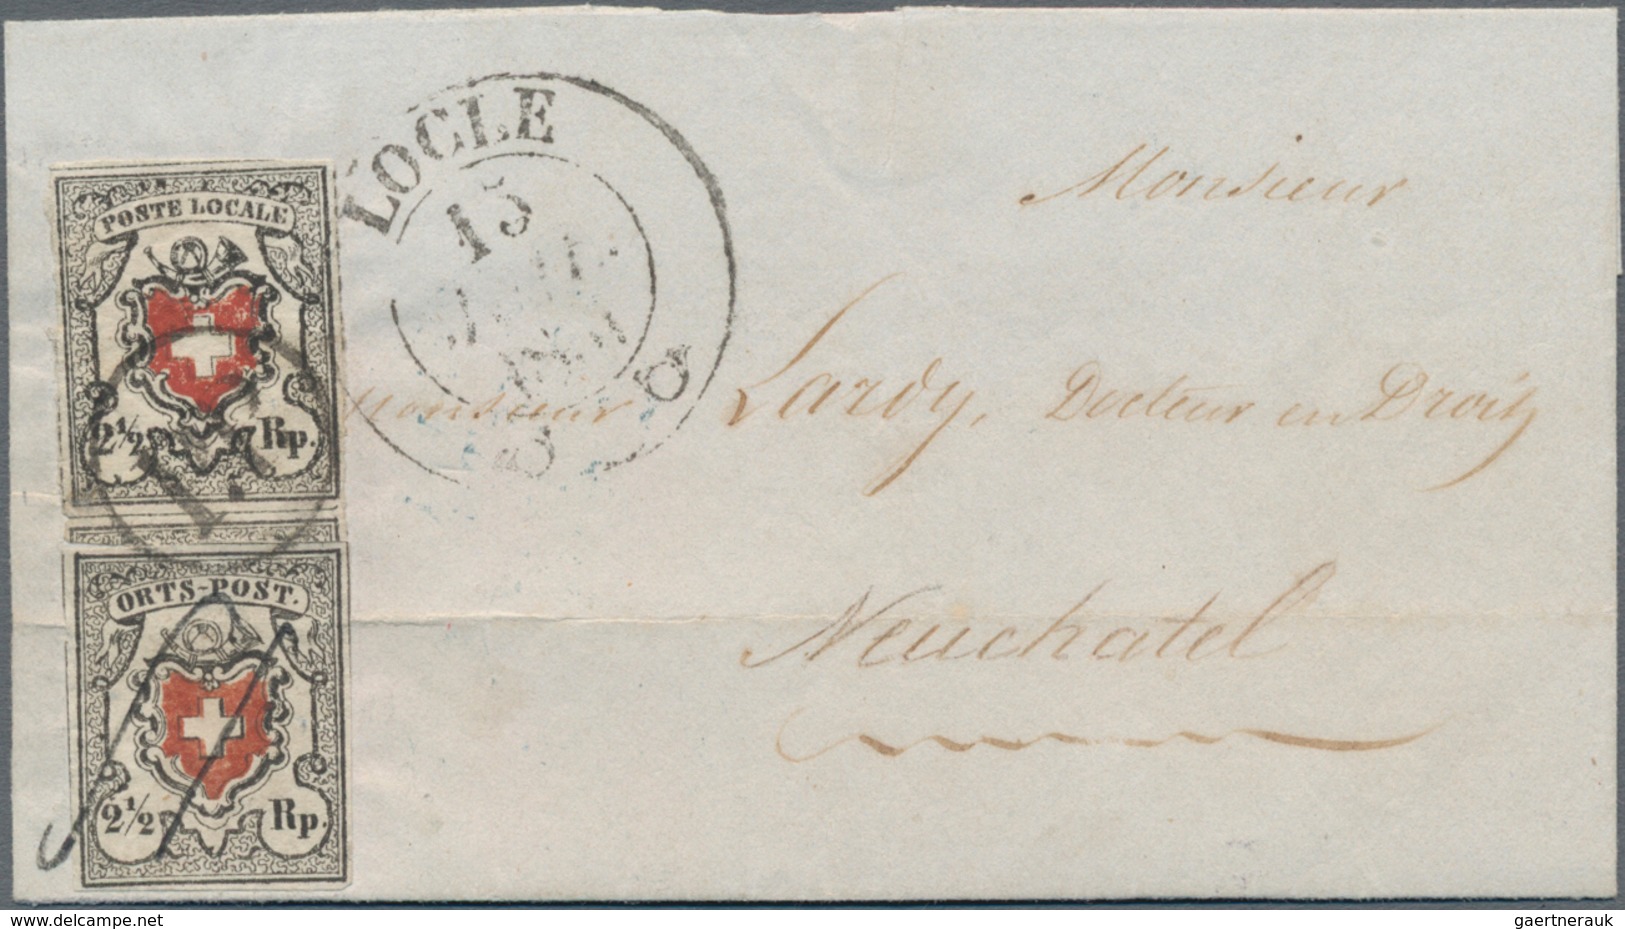 Schweiz: 1850 Poste Locale 2½ Rp. Tiefschwarz/braunrot (Type 6 Mit KE) In Kombination Mit Ortspost 2 - Used Stamps